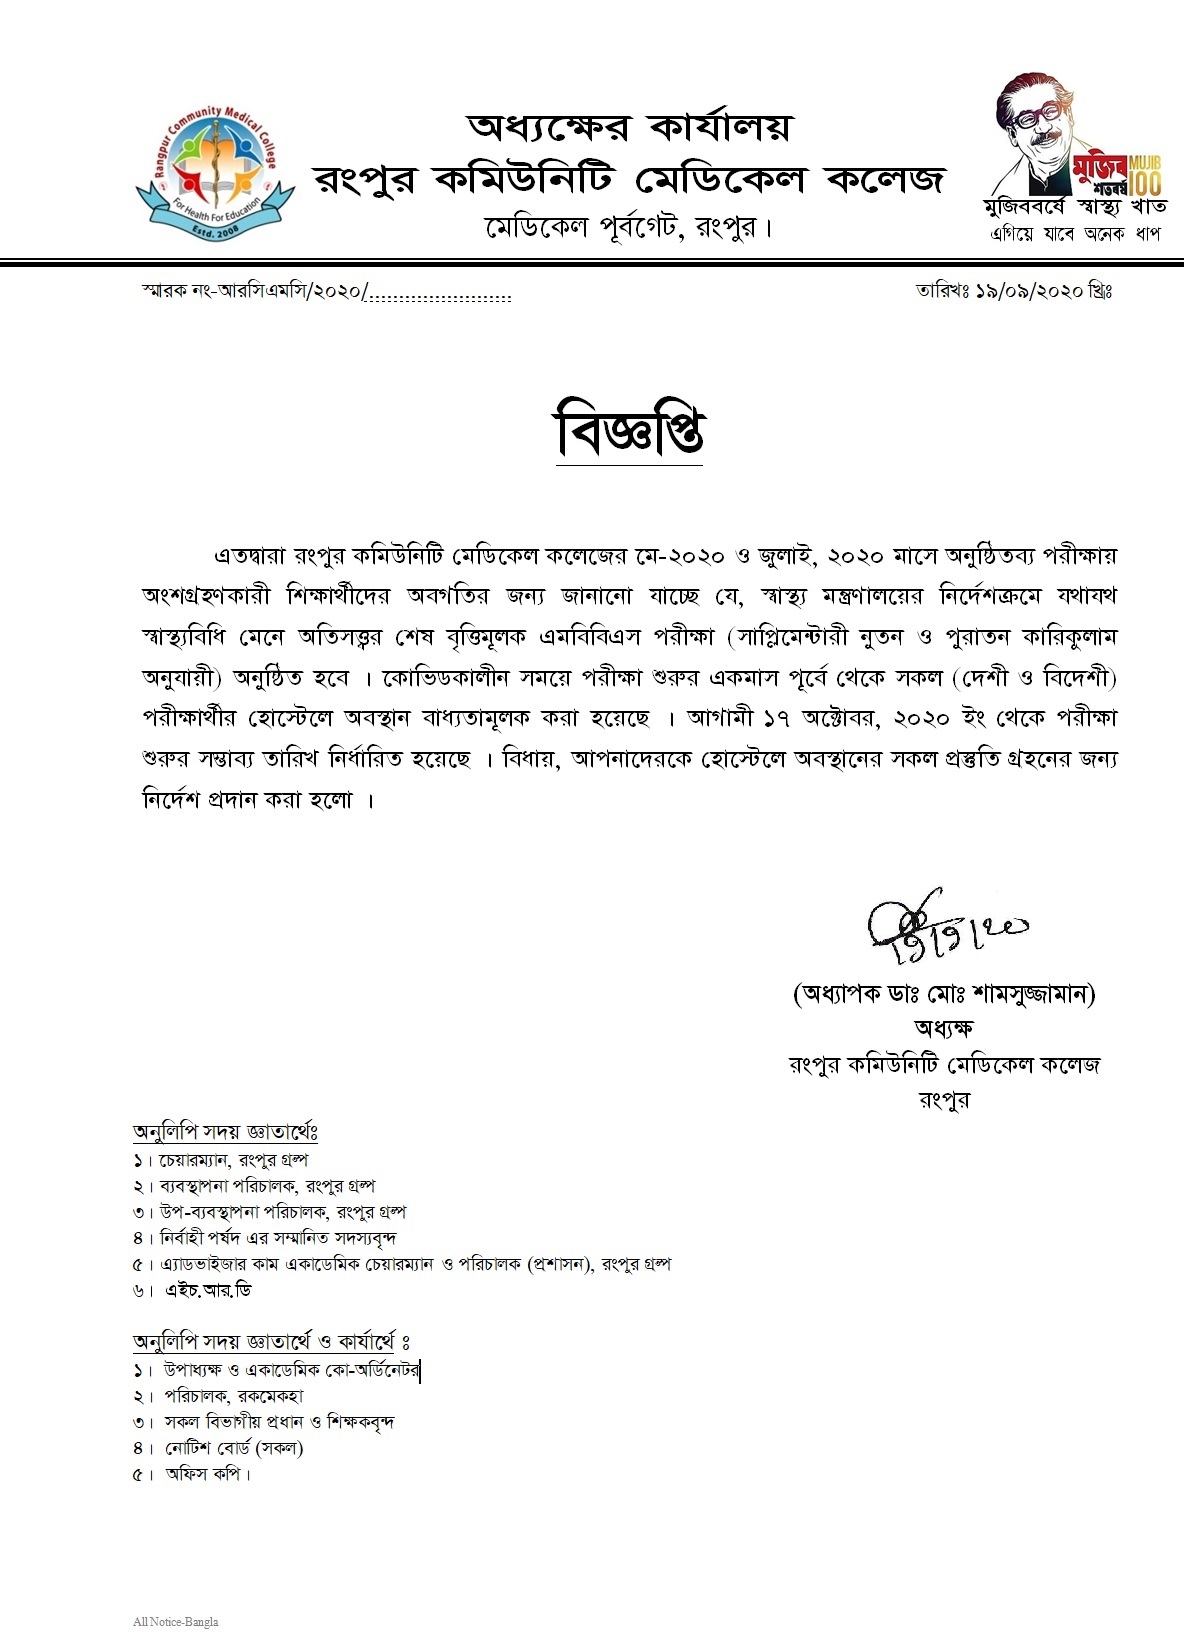 Notice of RCMC Examinees